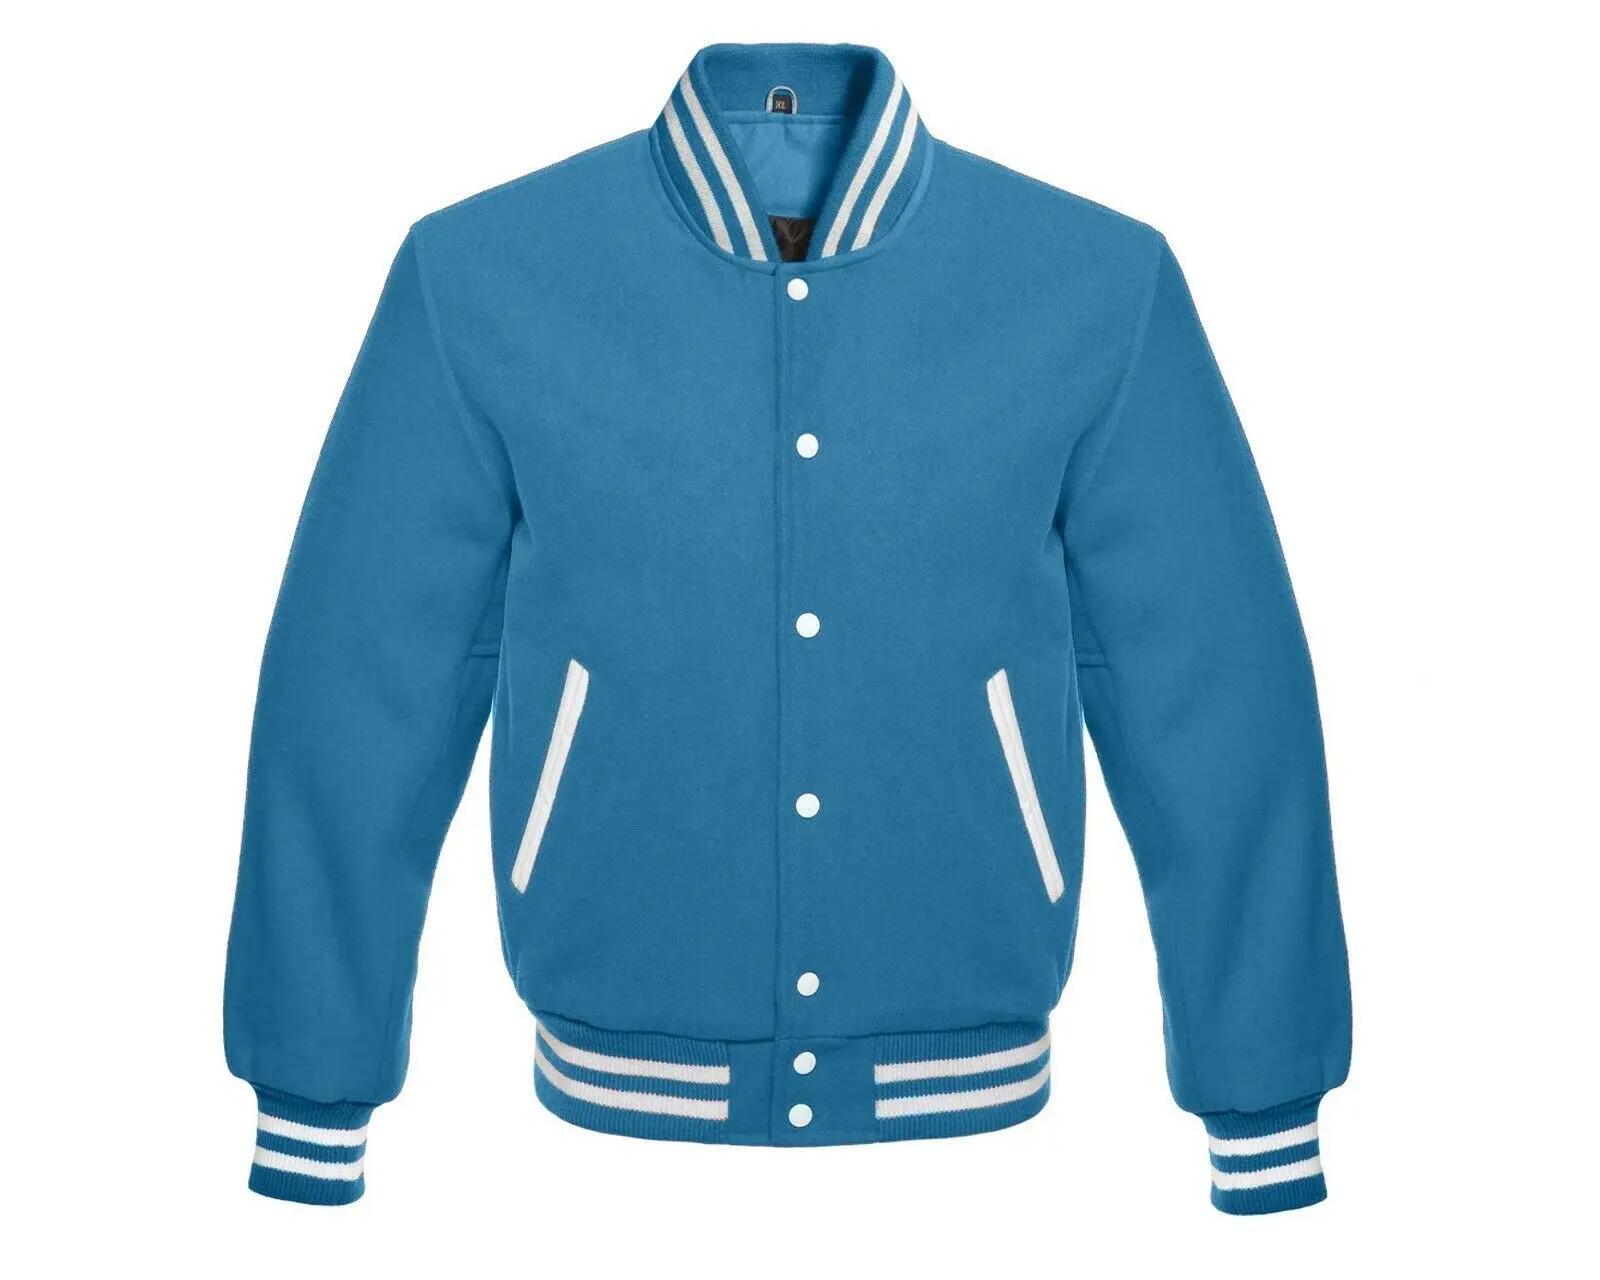 Куртка из натуральной шерсти голубого цвета